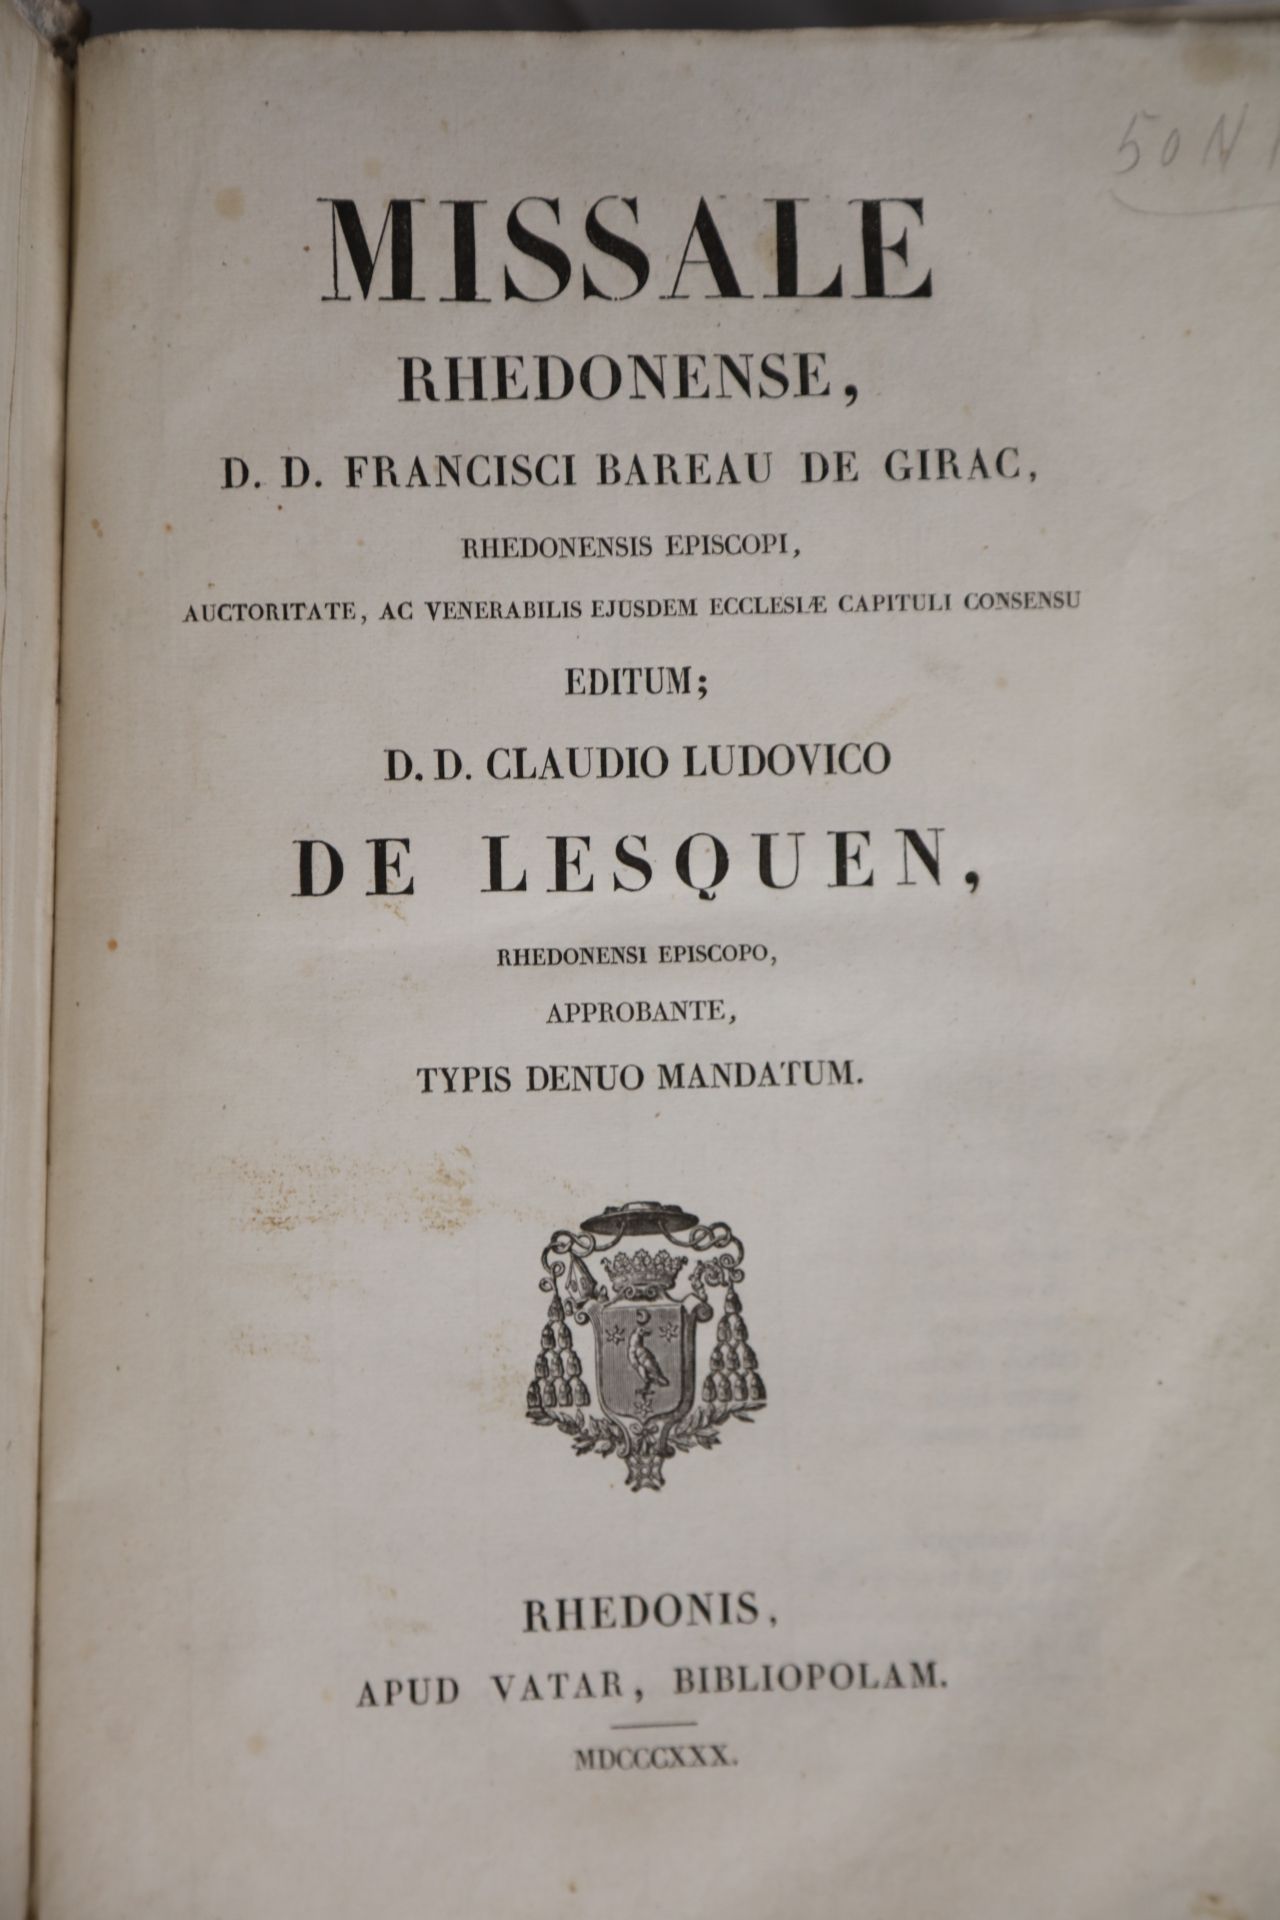 Null MISSALE, Rhedonense, editum D.D.Claudio Ludivico, De Lesquen. 1830, 30X26